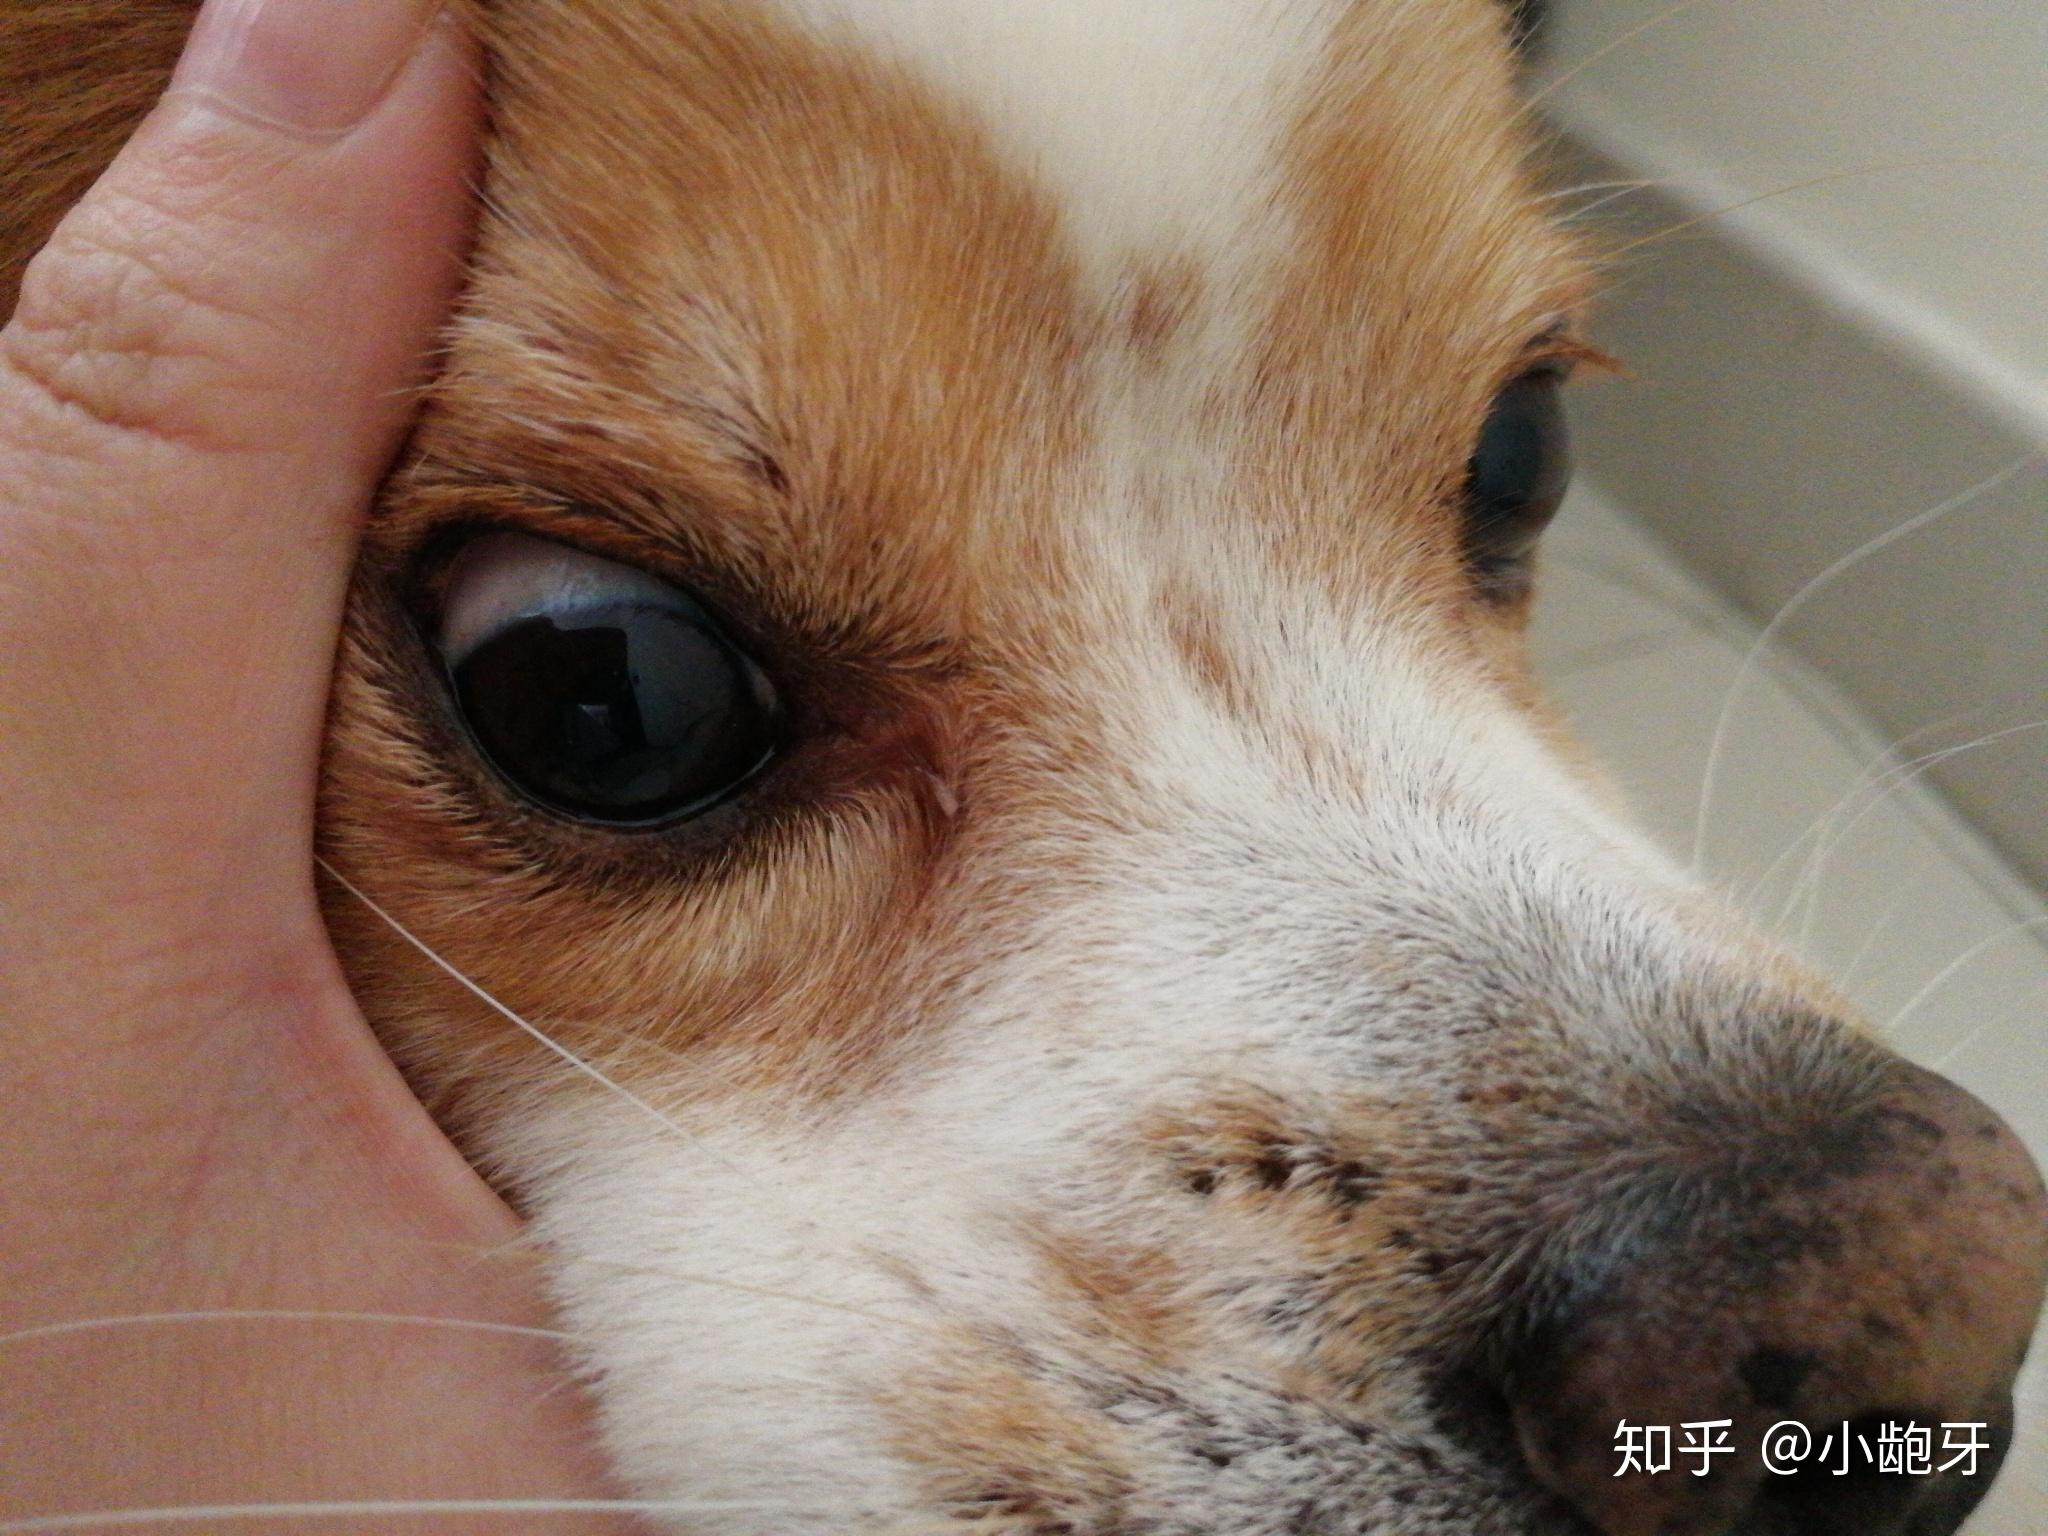 狗狗一个眼睛里面红,不清澈,眼白有血丝,请问是怎么回事? 